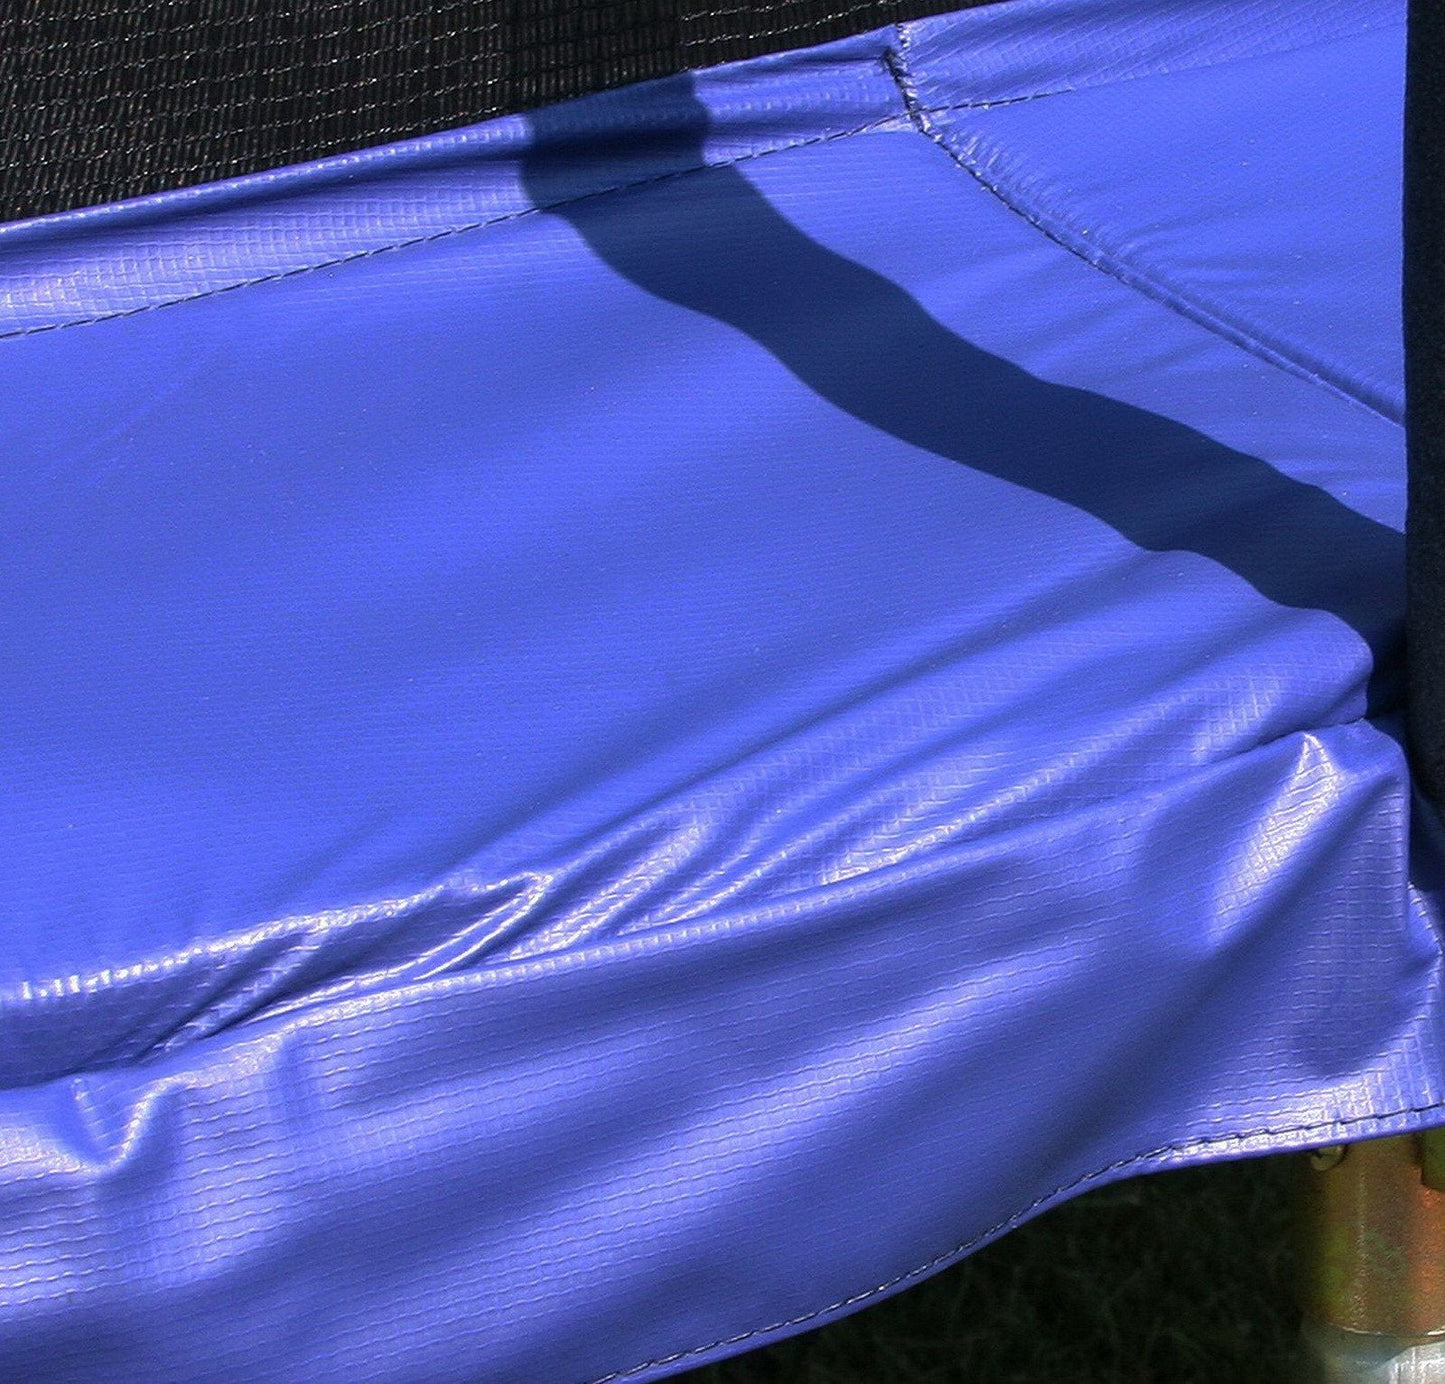 15' x 9' Rectangle Trampoline & Safety Enclosure Walls Skywalker Blue